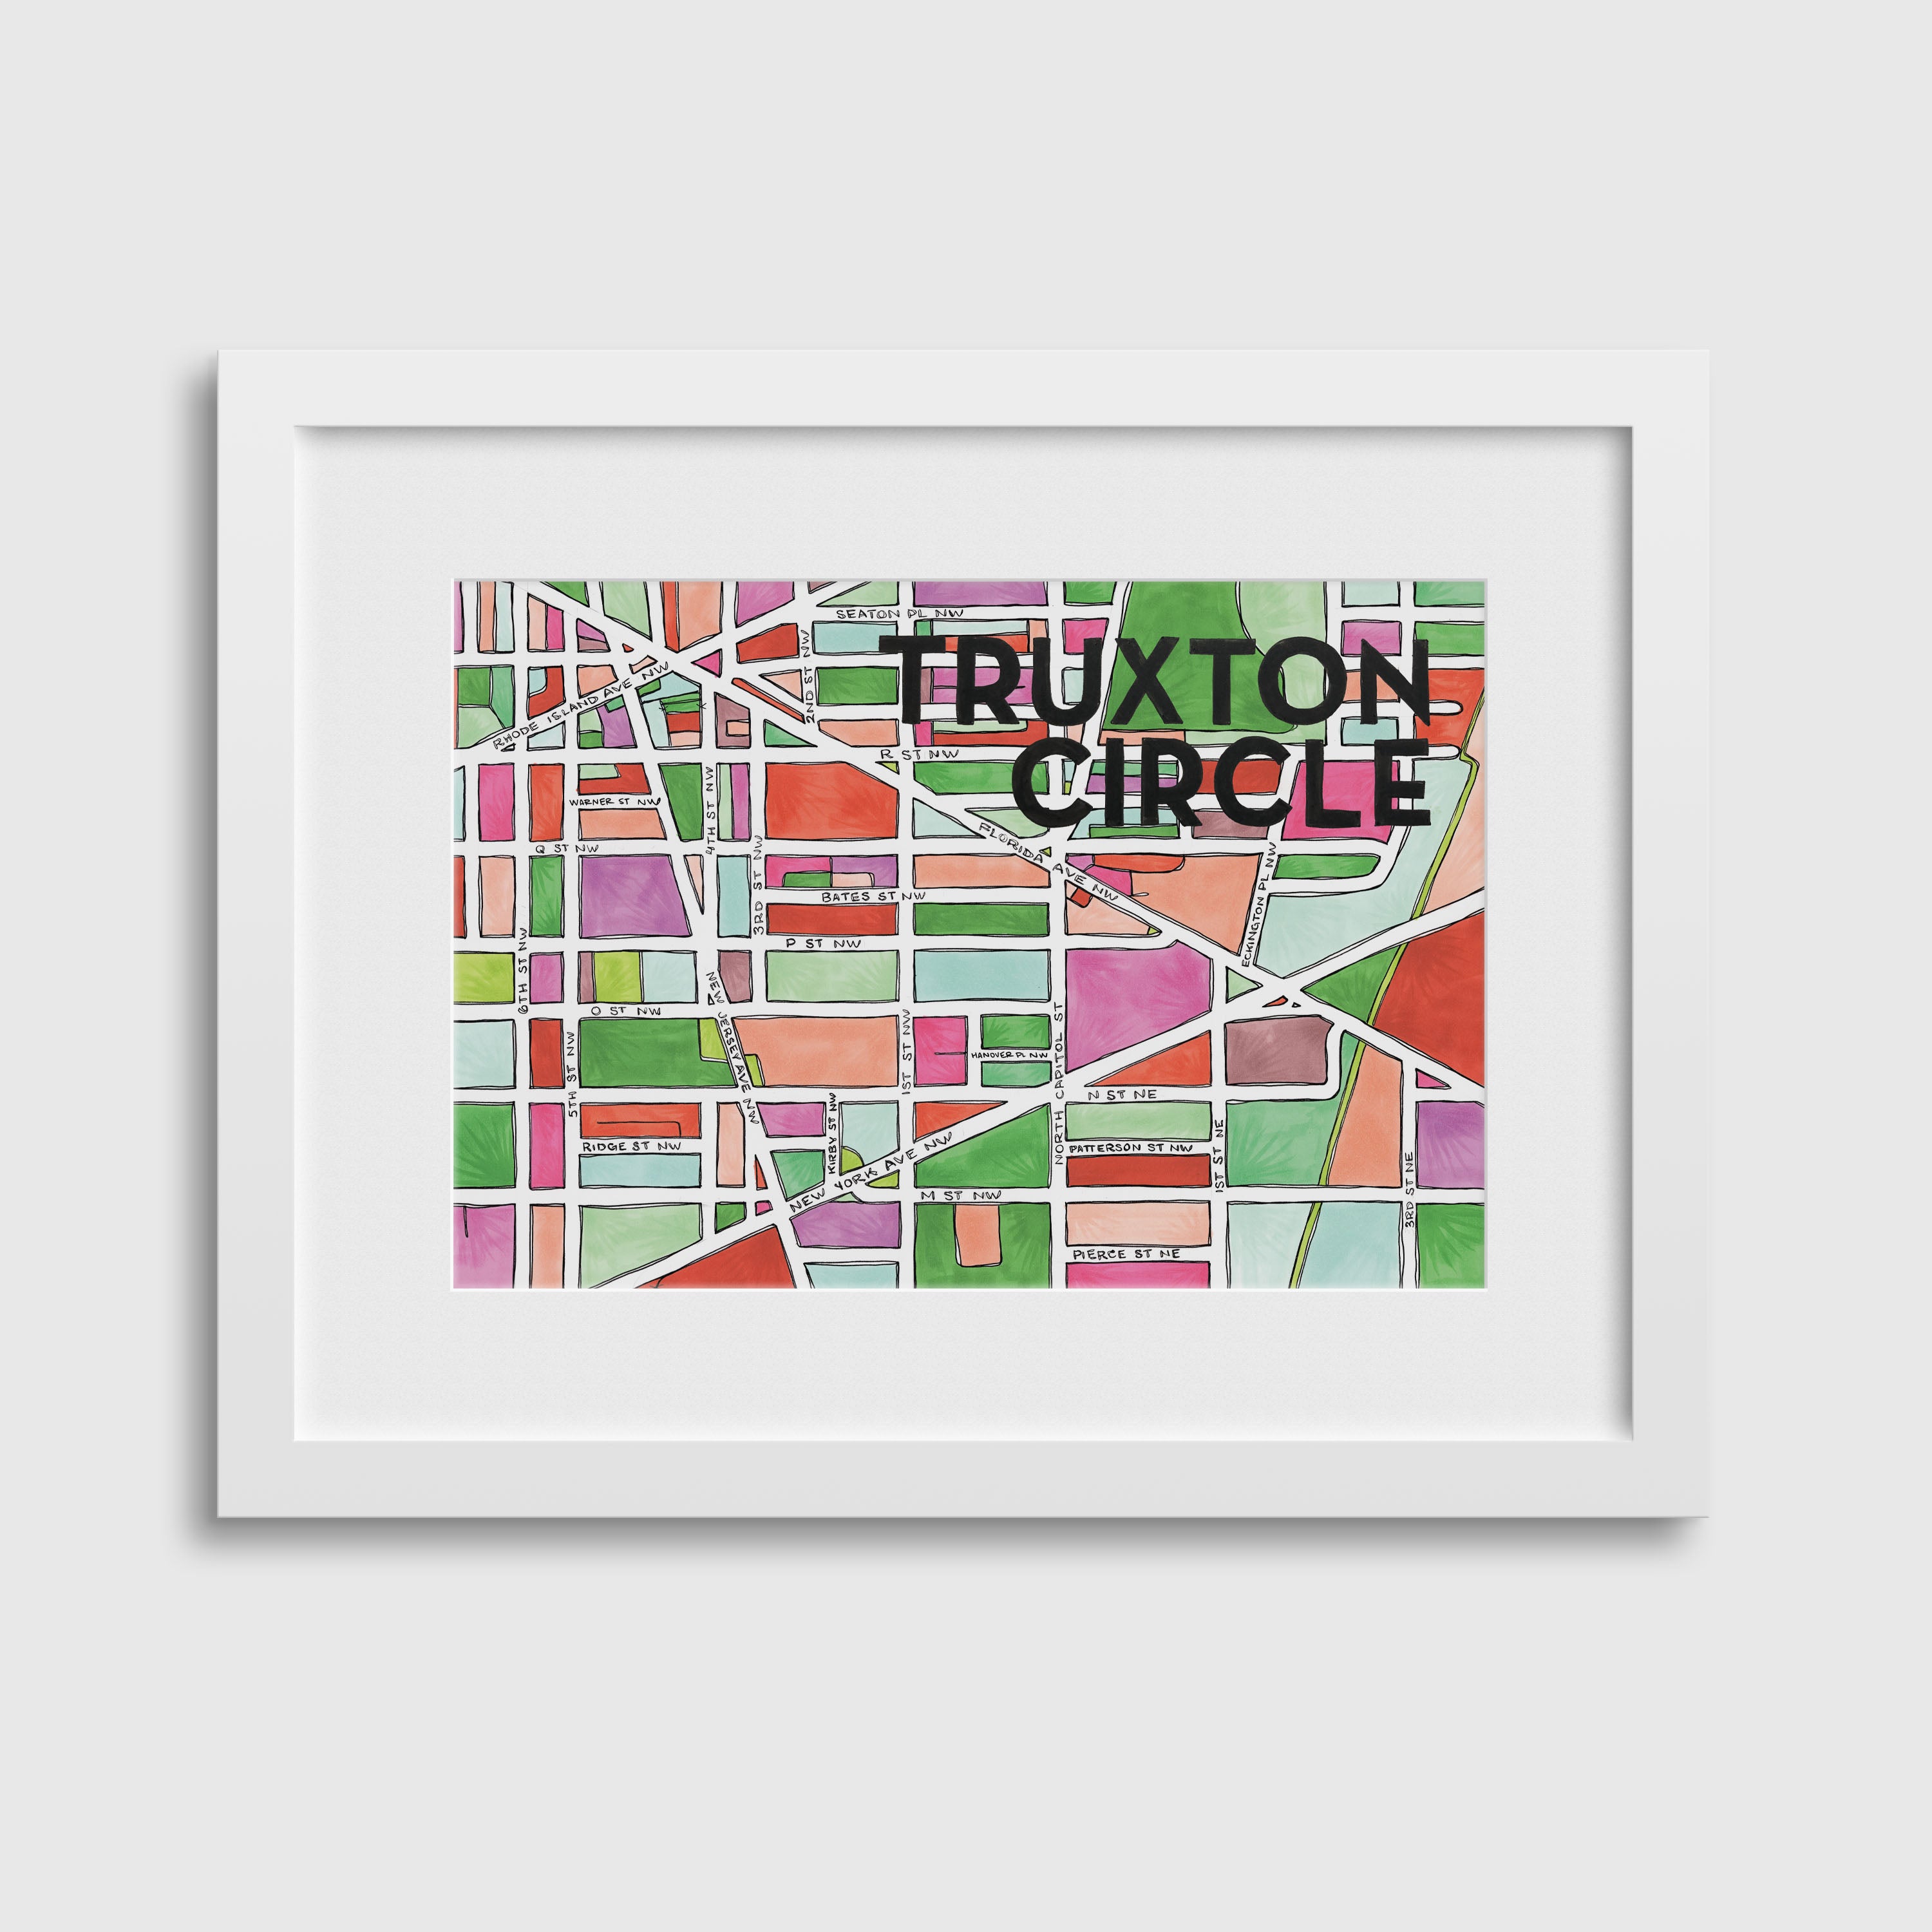 Truxton Circle Print